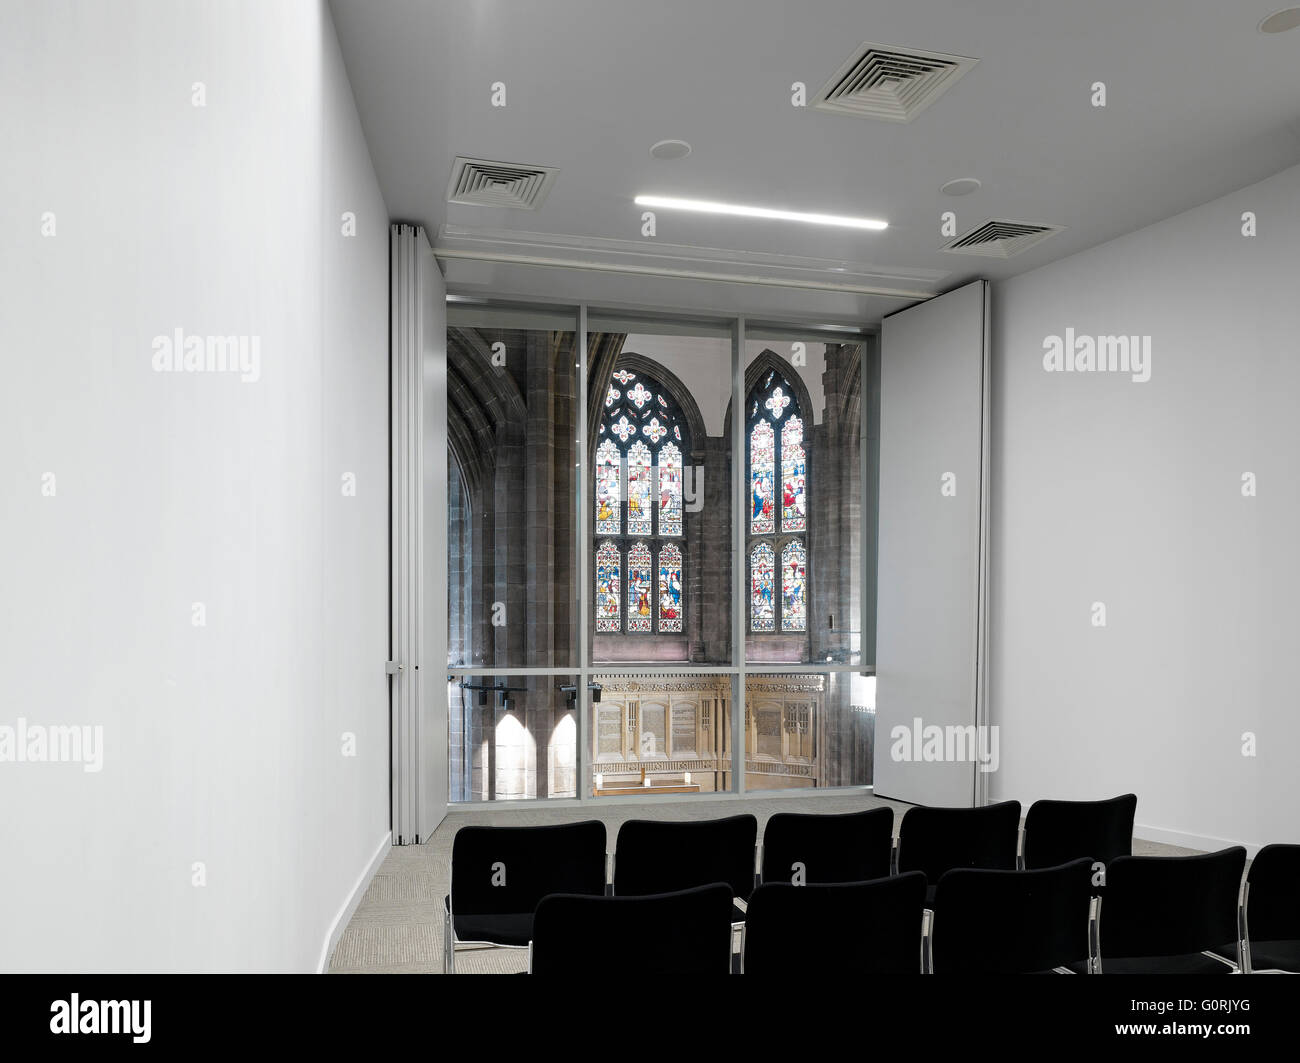 Alle Seelen, Bolton, England. Weißer Raum mit Stuhlreihen. Farbige Glasfenster. Stockfoto